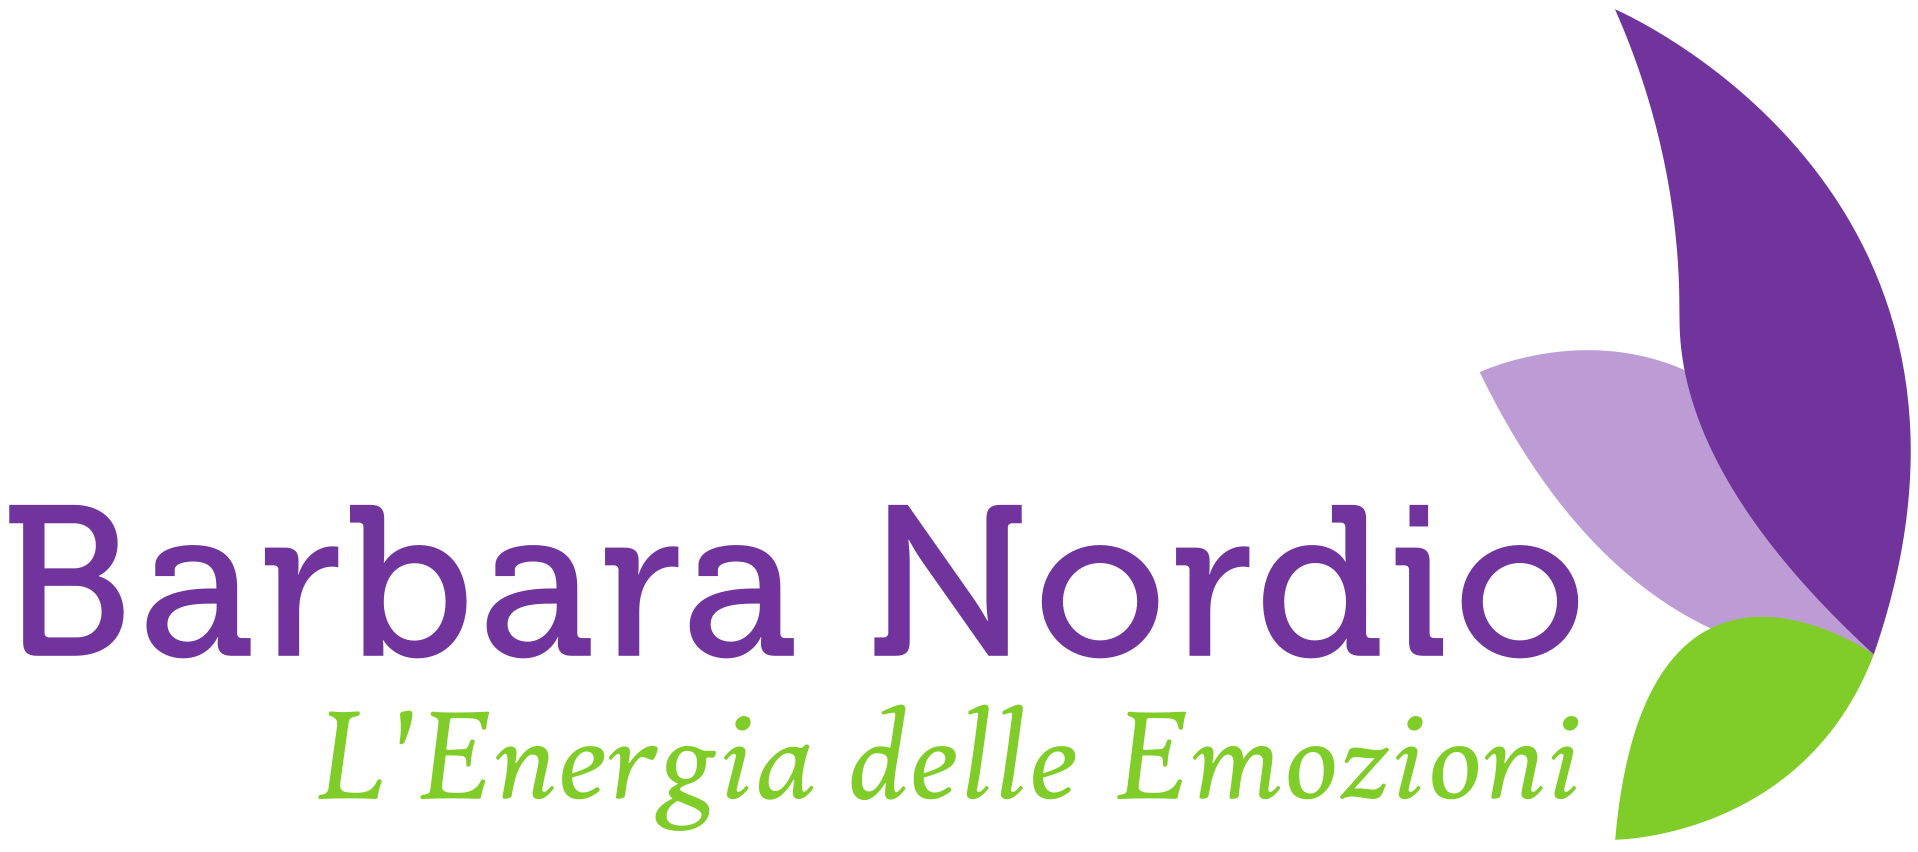 Barbara Nordio – L'energia delle emozioni